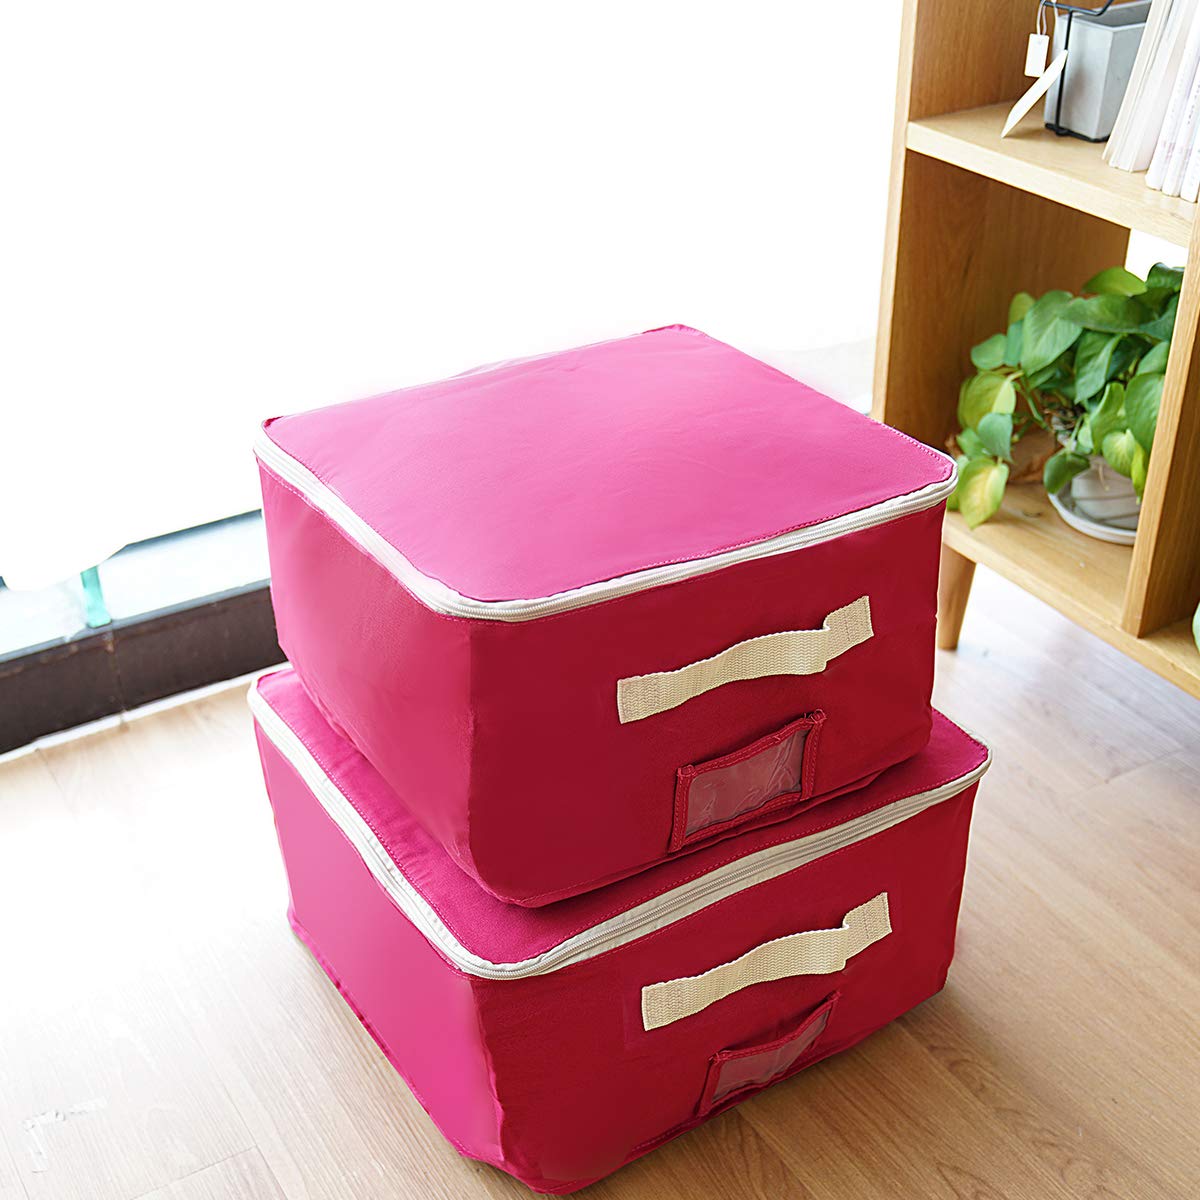 STORAGEMANIAC Set of 4 Canvas Storage Organizer Bags - Red & Beige